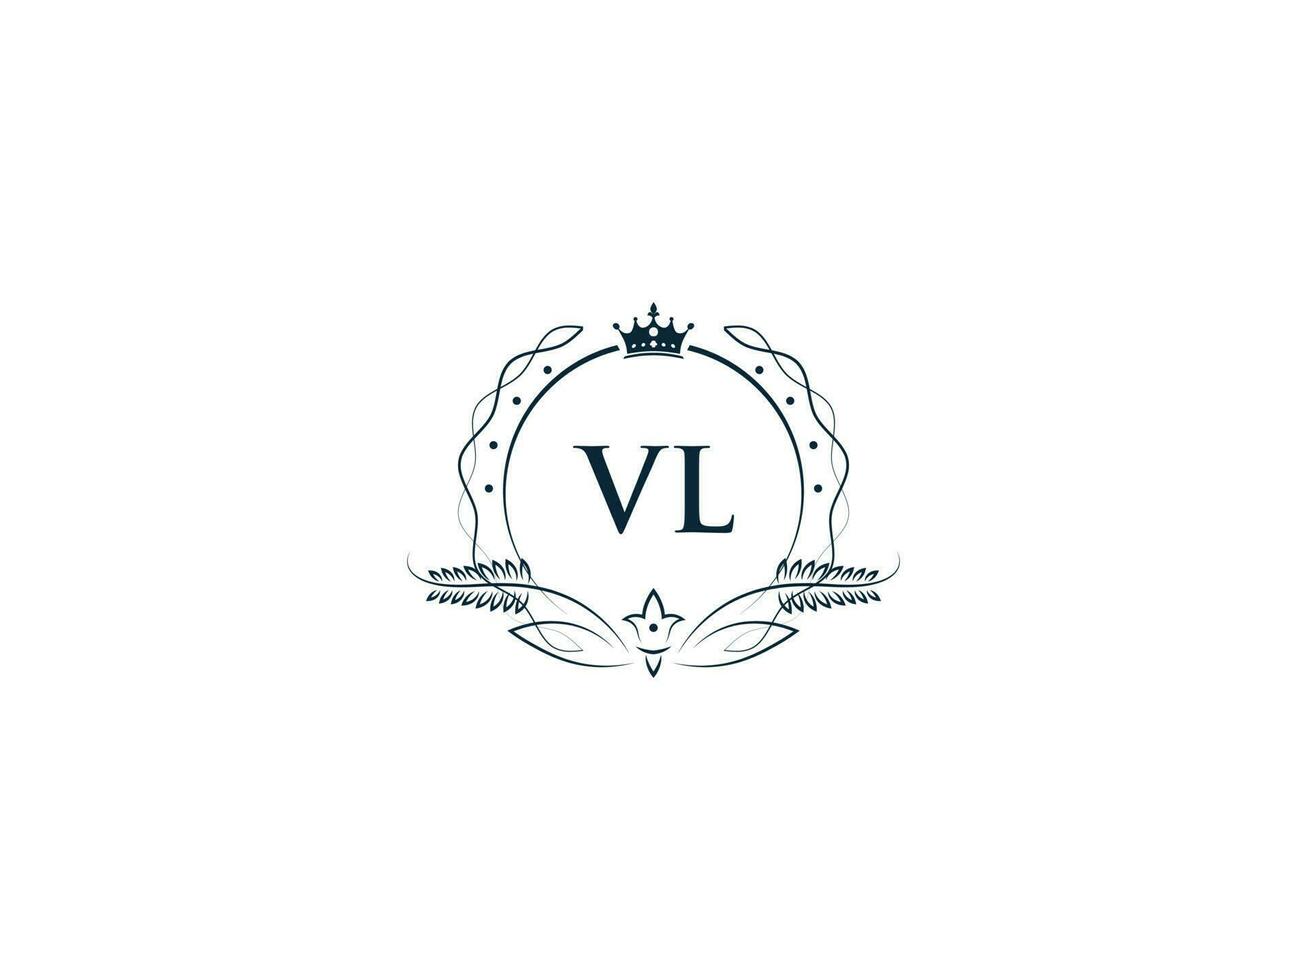 första vl logotyp brev design, minimal kunglig krona vl lv feminin logotyp symbol vektor